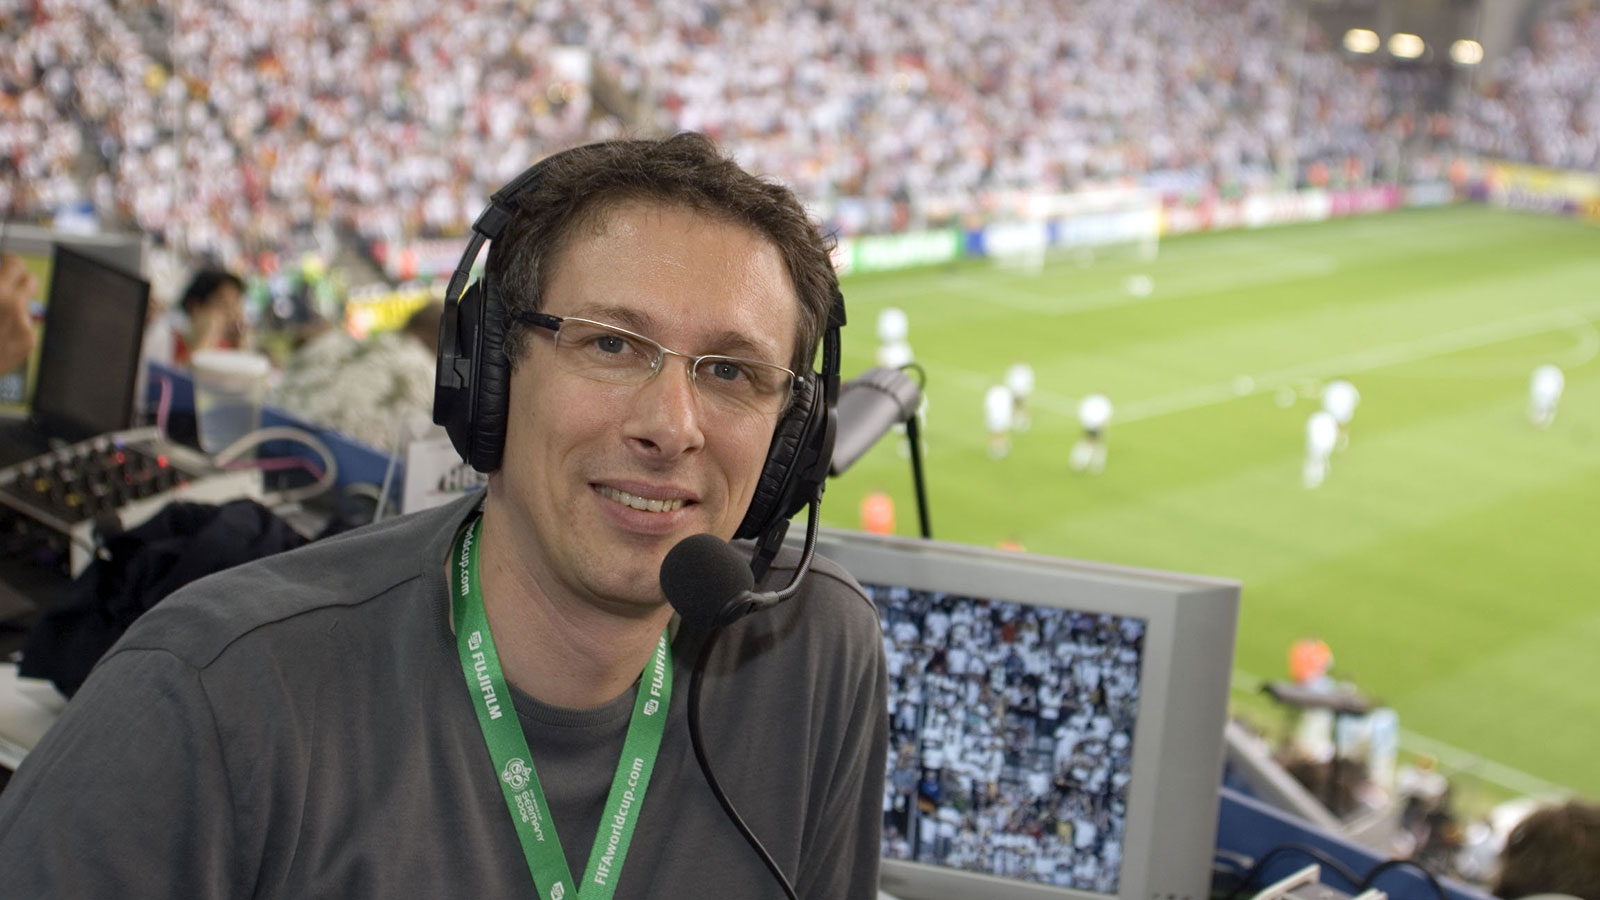 Sportschaukommentator Steffen Simon